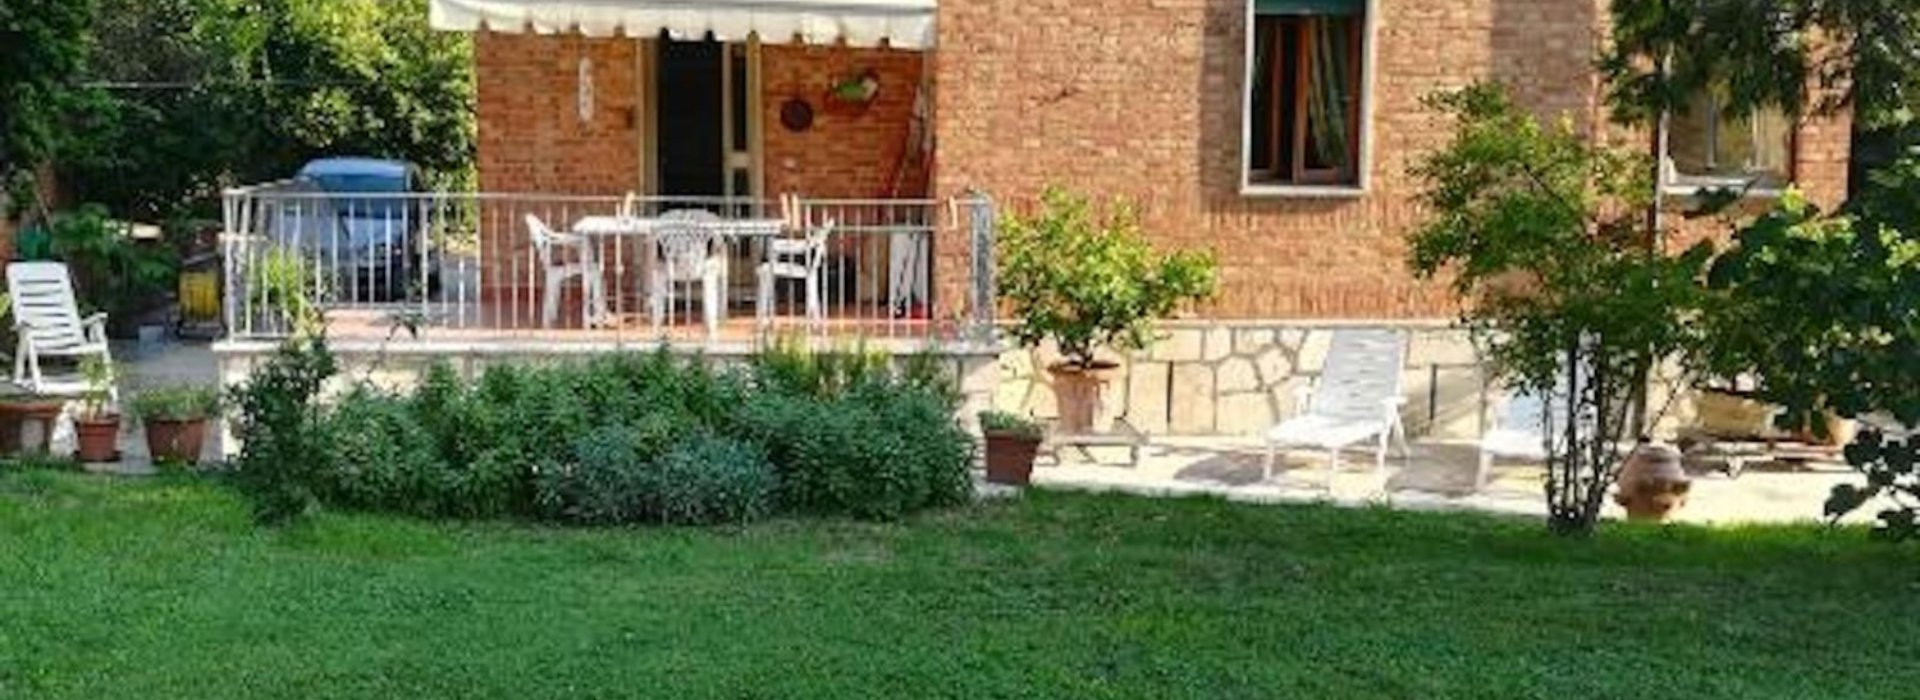 Villa La Pineta ti aspetta per un piacevole weekend tra amici nel cuore della Valdichiana